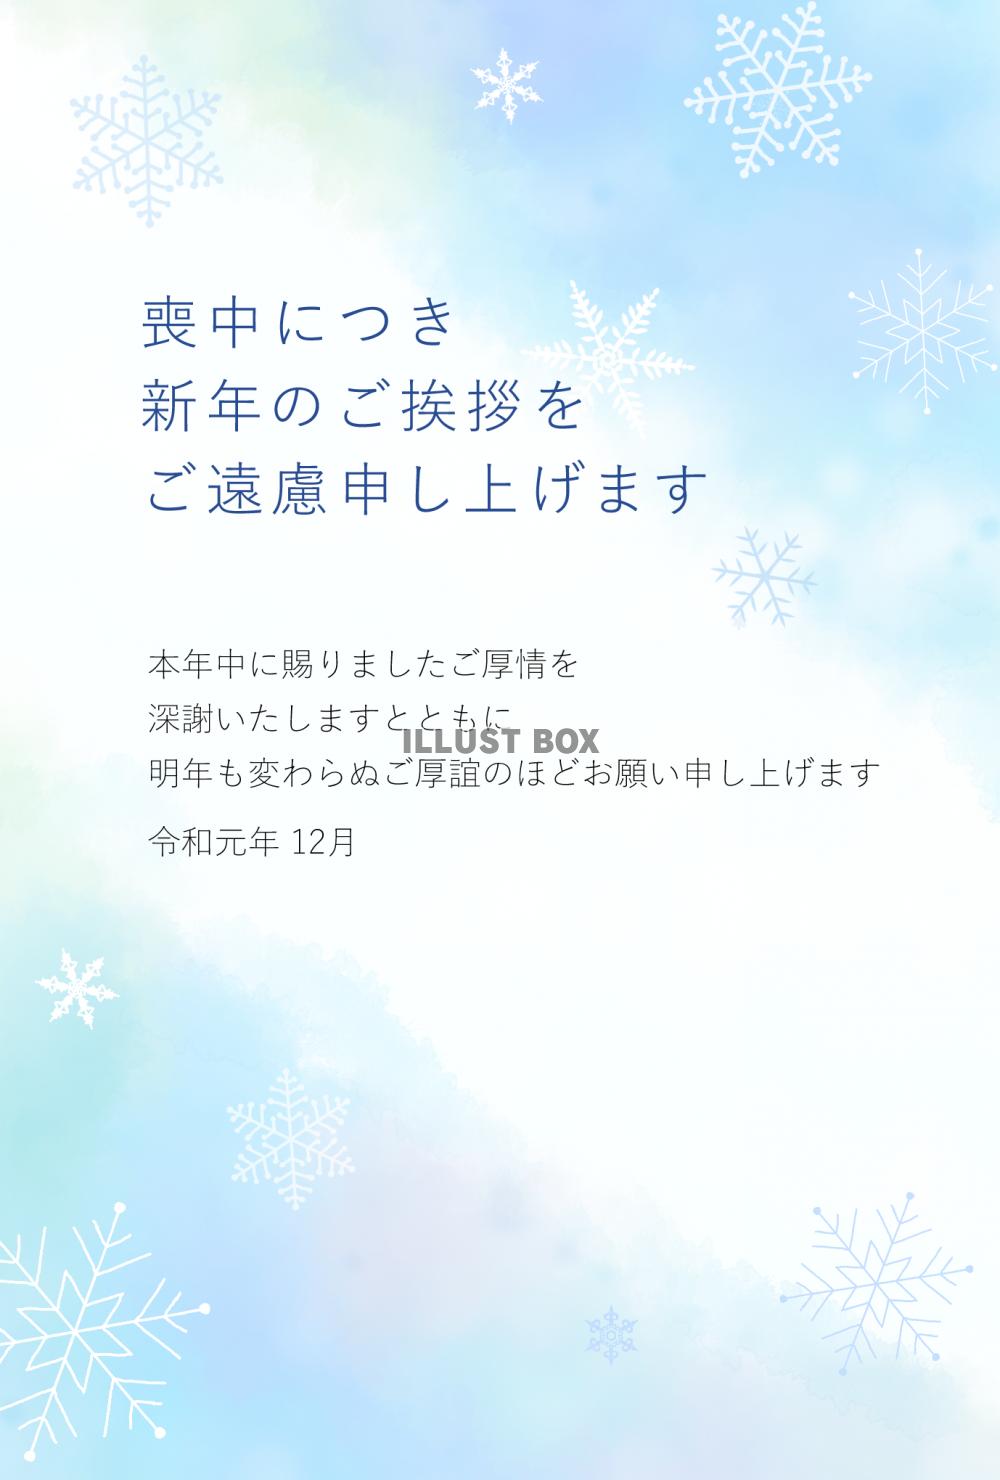 無料イラスト 雪の結晶の喪中はがき 挨拶文あり 令和元年12月